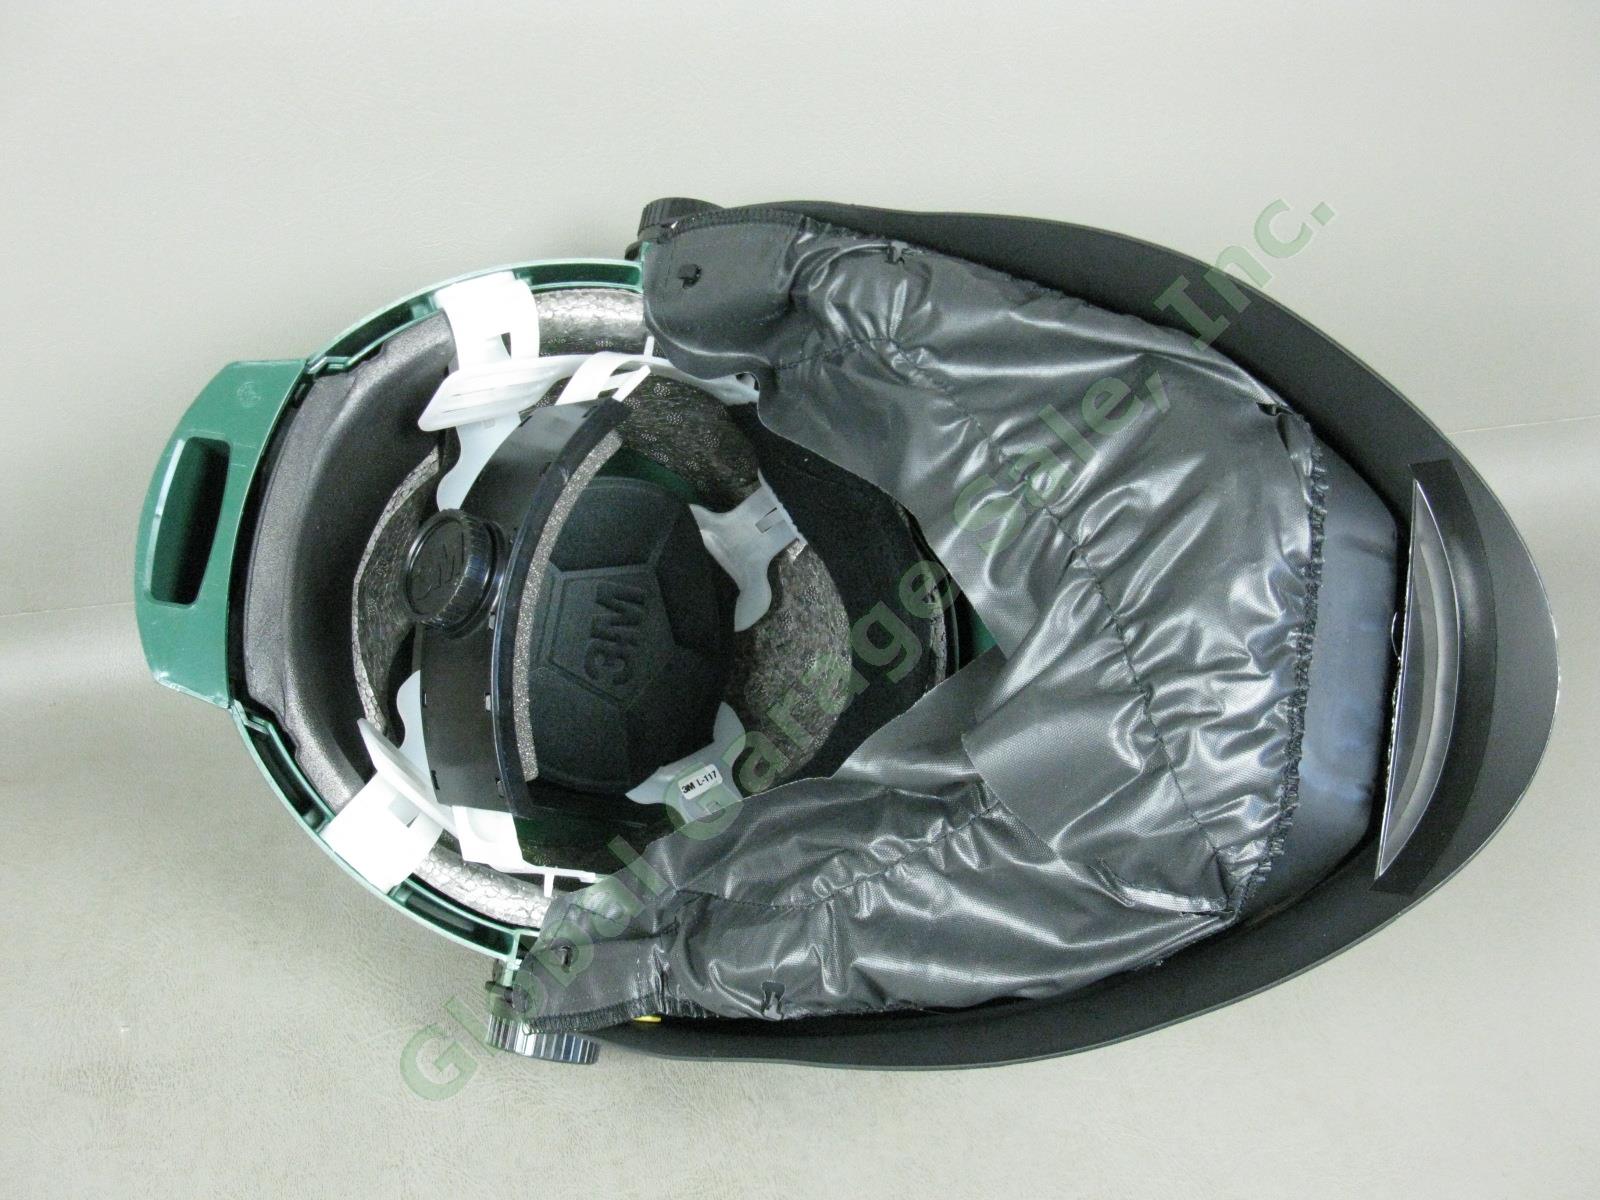 NEW 3M L-705SG L-Series SG Speedglas Hard Hat W/ Wide-View Welding Shield Helmet 4